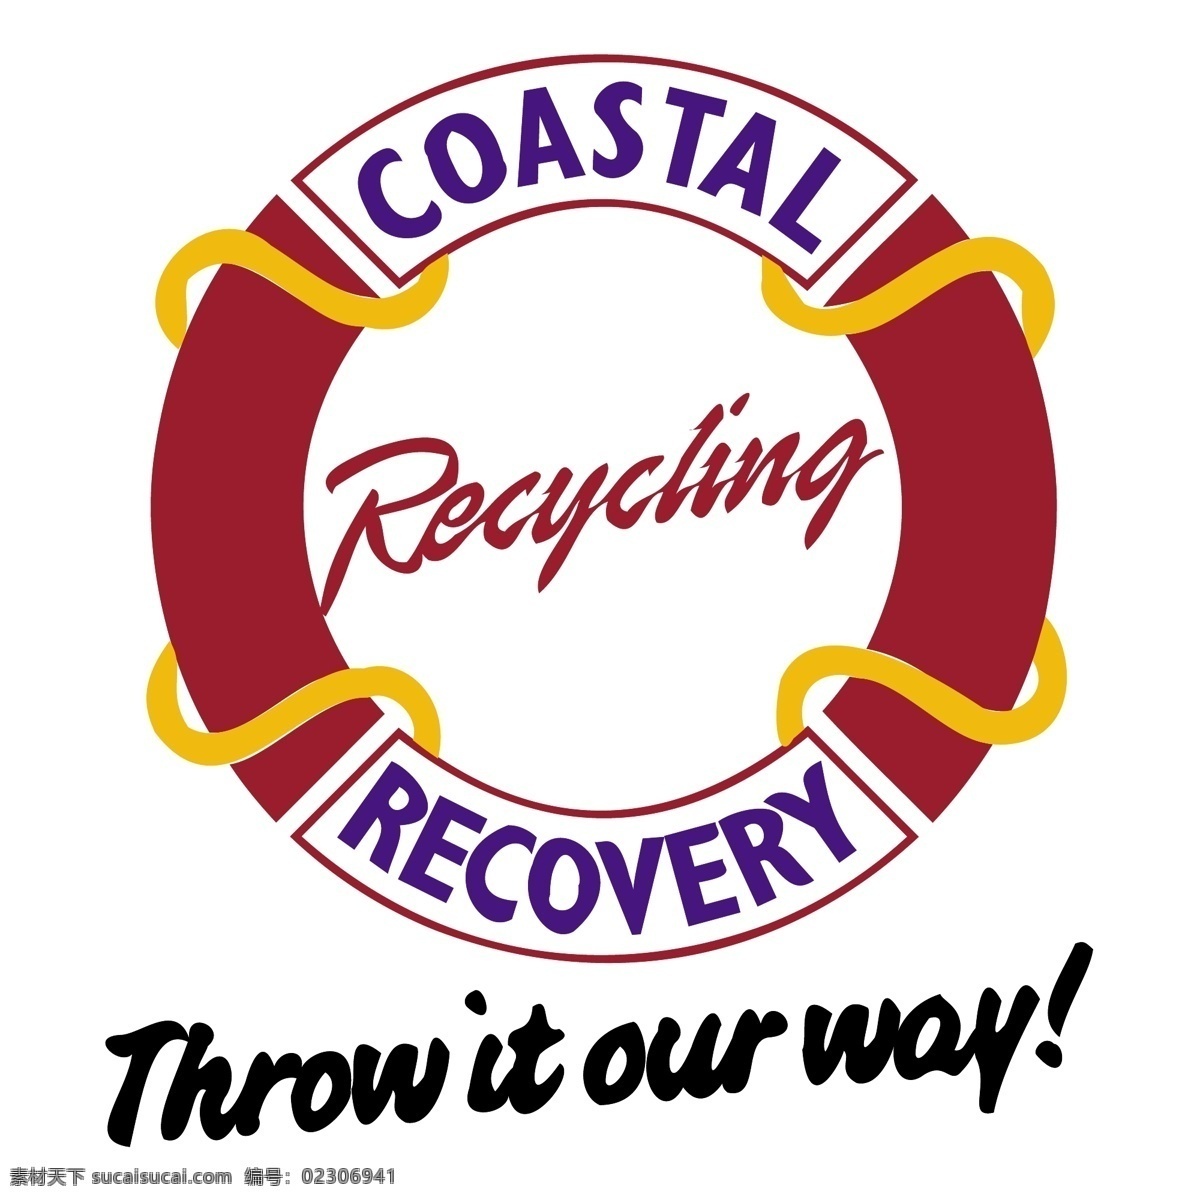 回收 沿海的 恢复 沿海 再 利用 红色